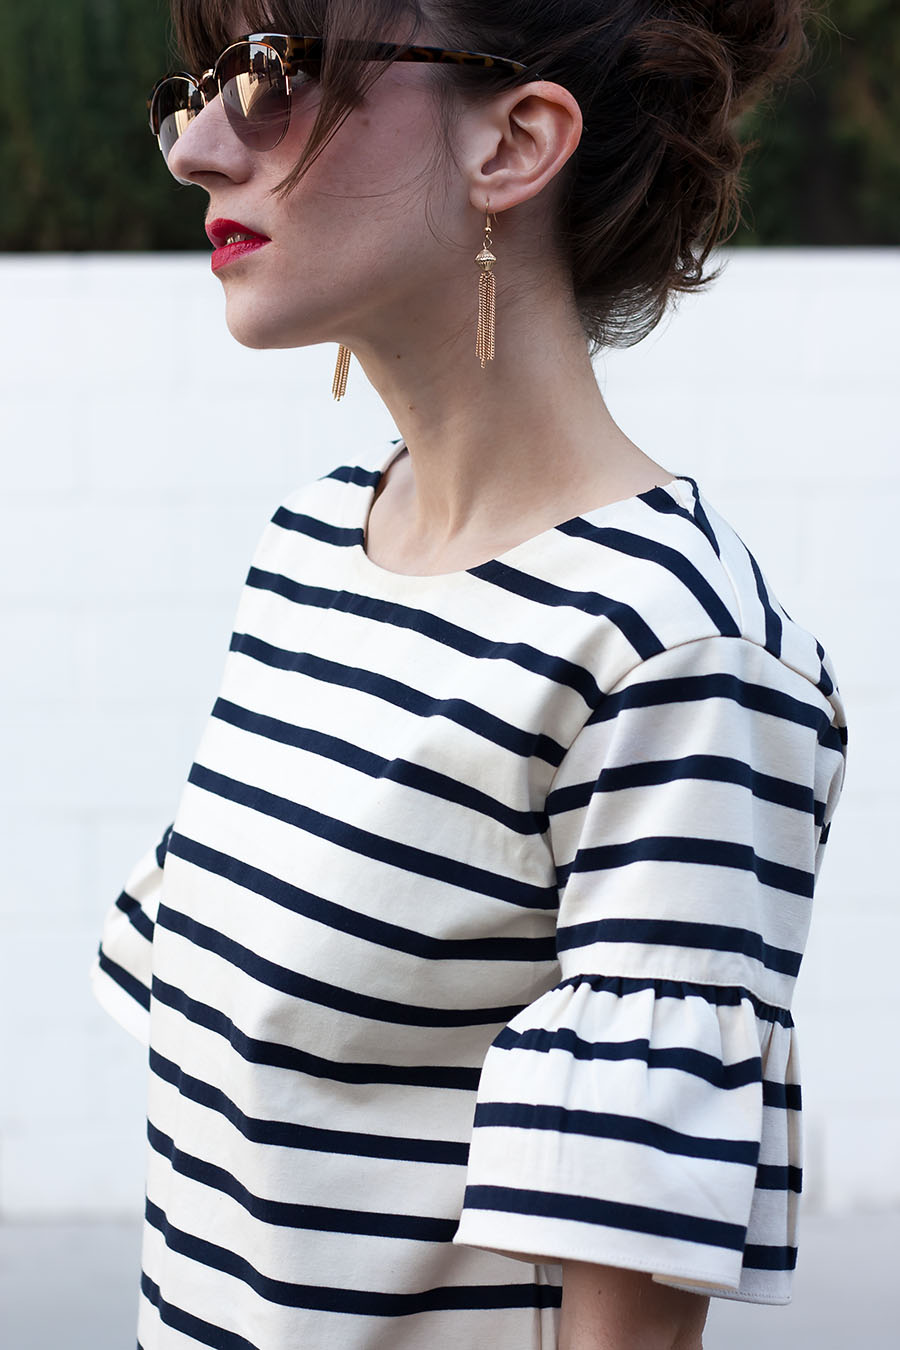 Striped Ruffle Shirt, Tassel Earrings